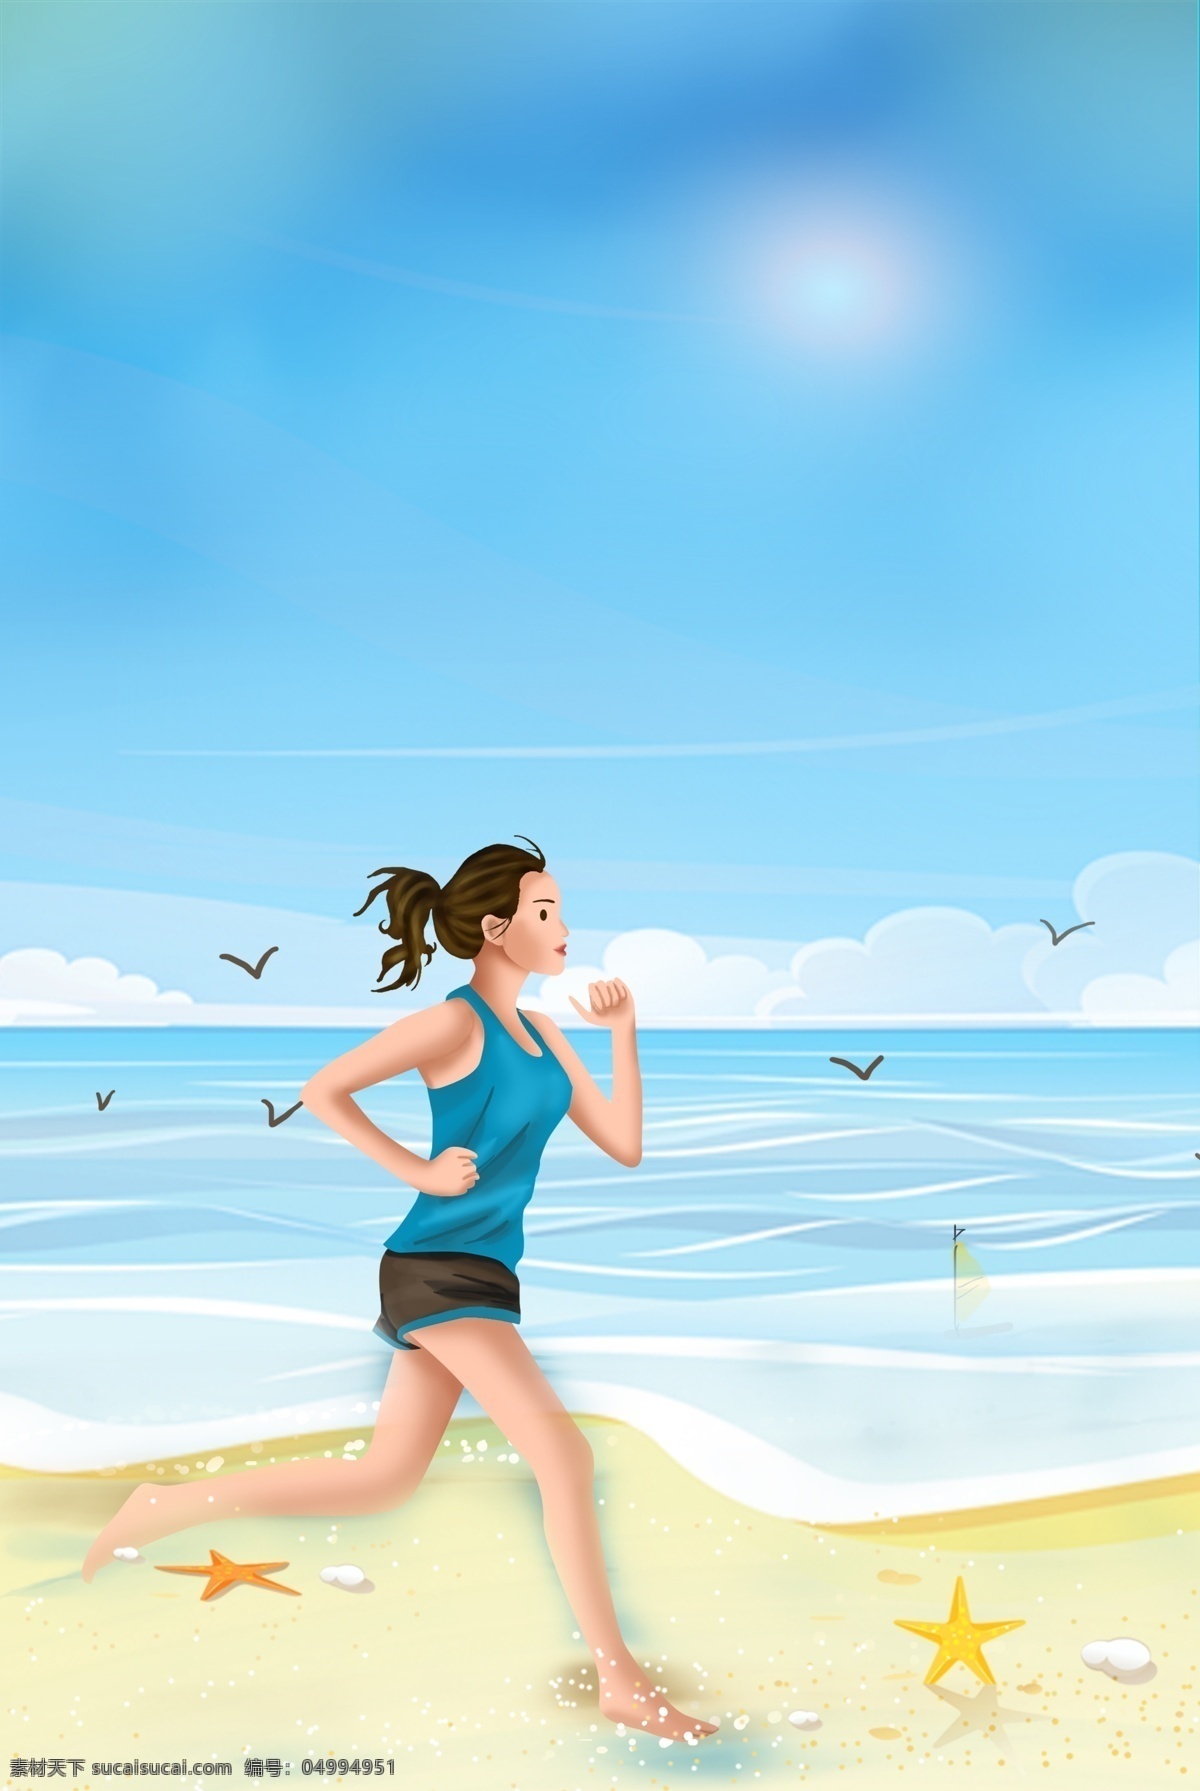 海边 散步 锻炼 场景 海边散步 运动 健身 跑步 健康 锻炼身体 健身房 户外活动